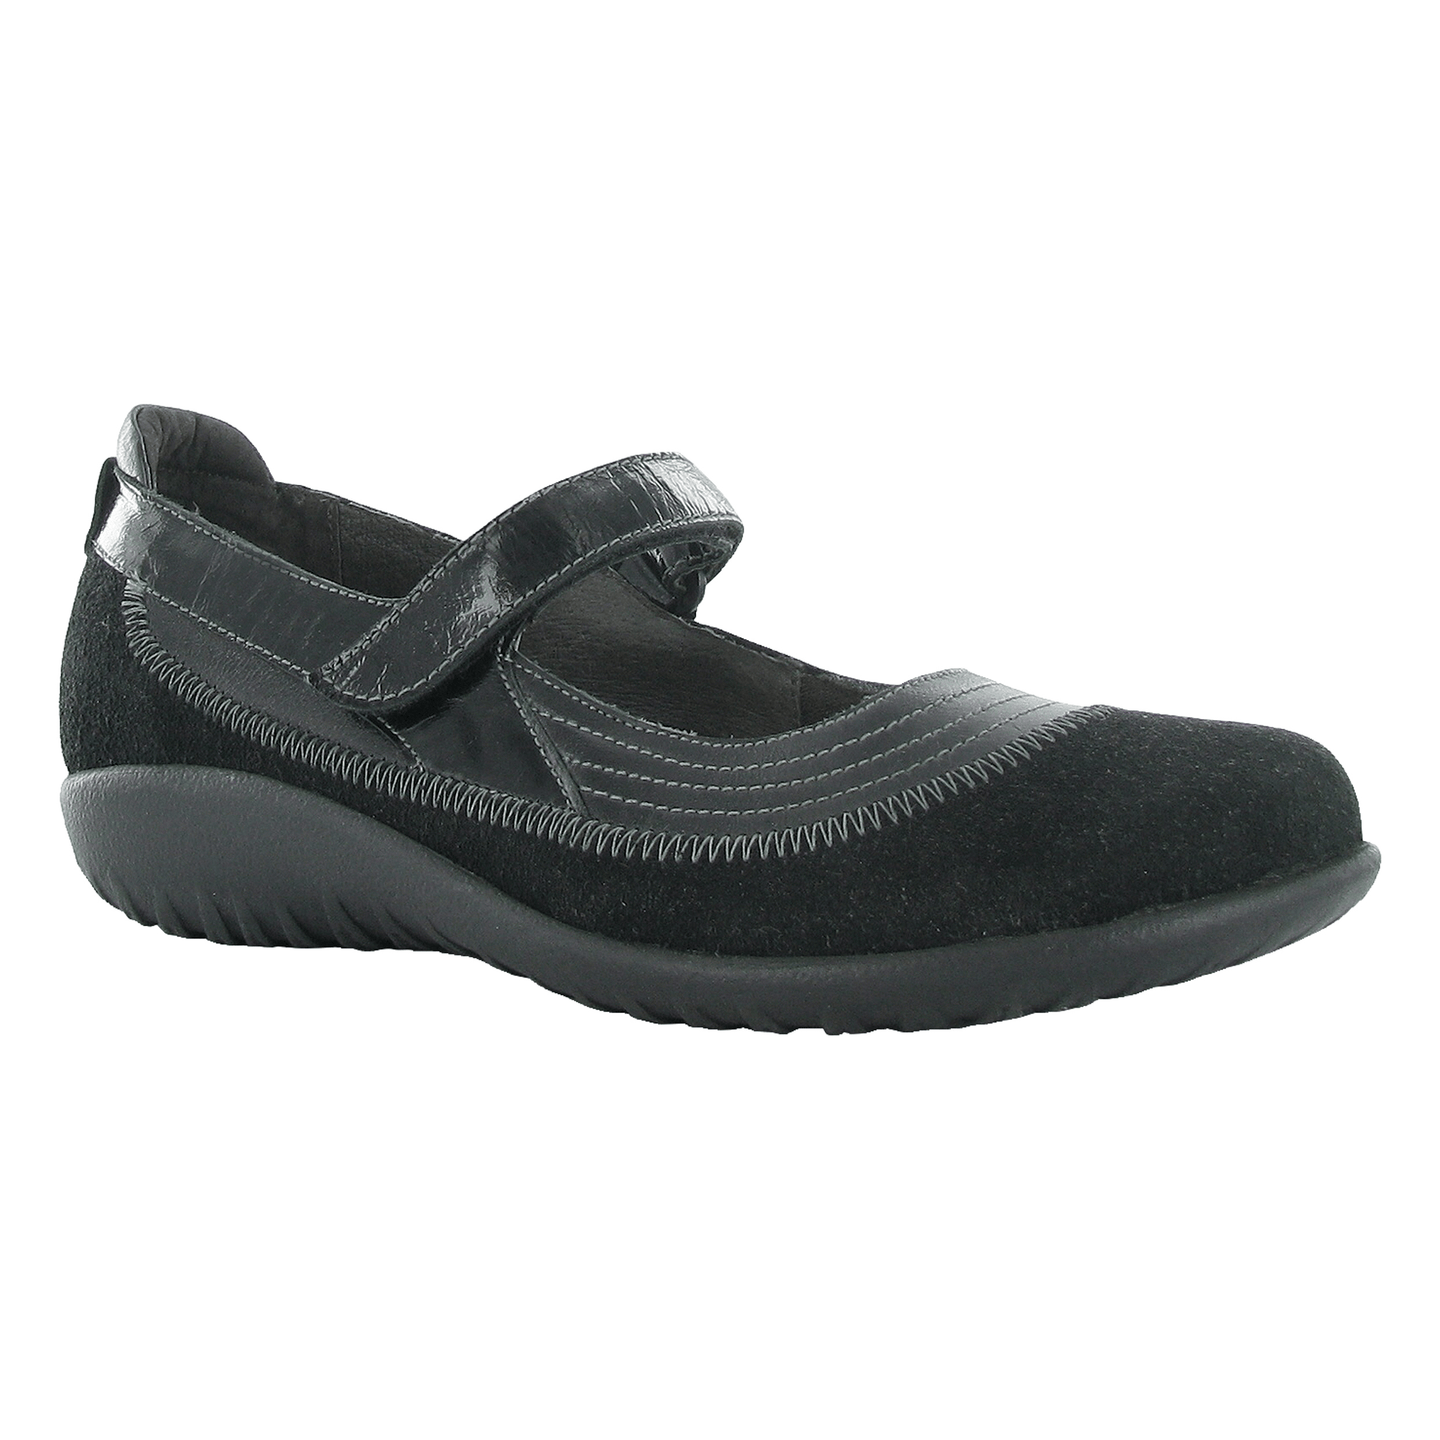 Kirei - Naot - Karavel Shoes - karavelshoes.com